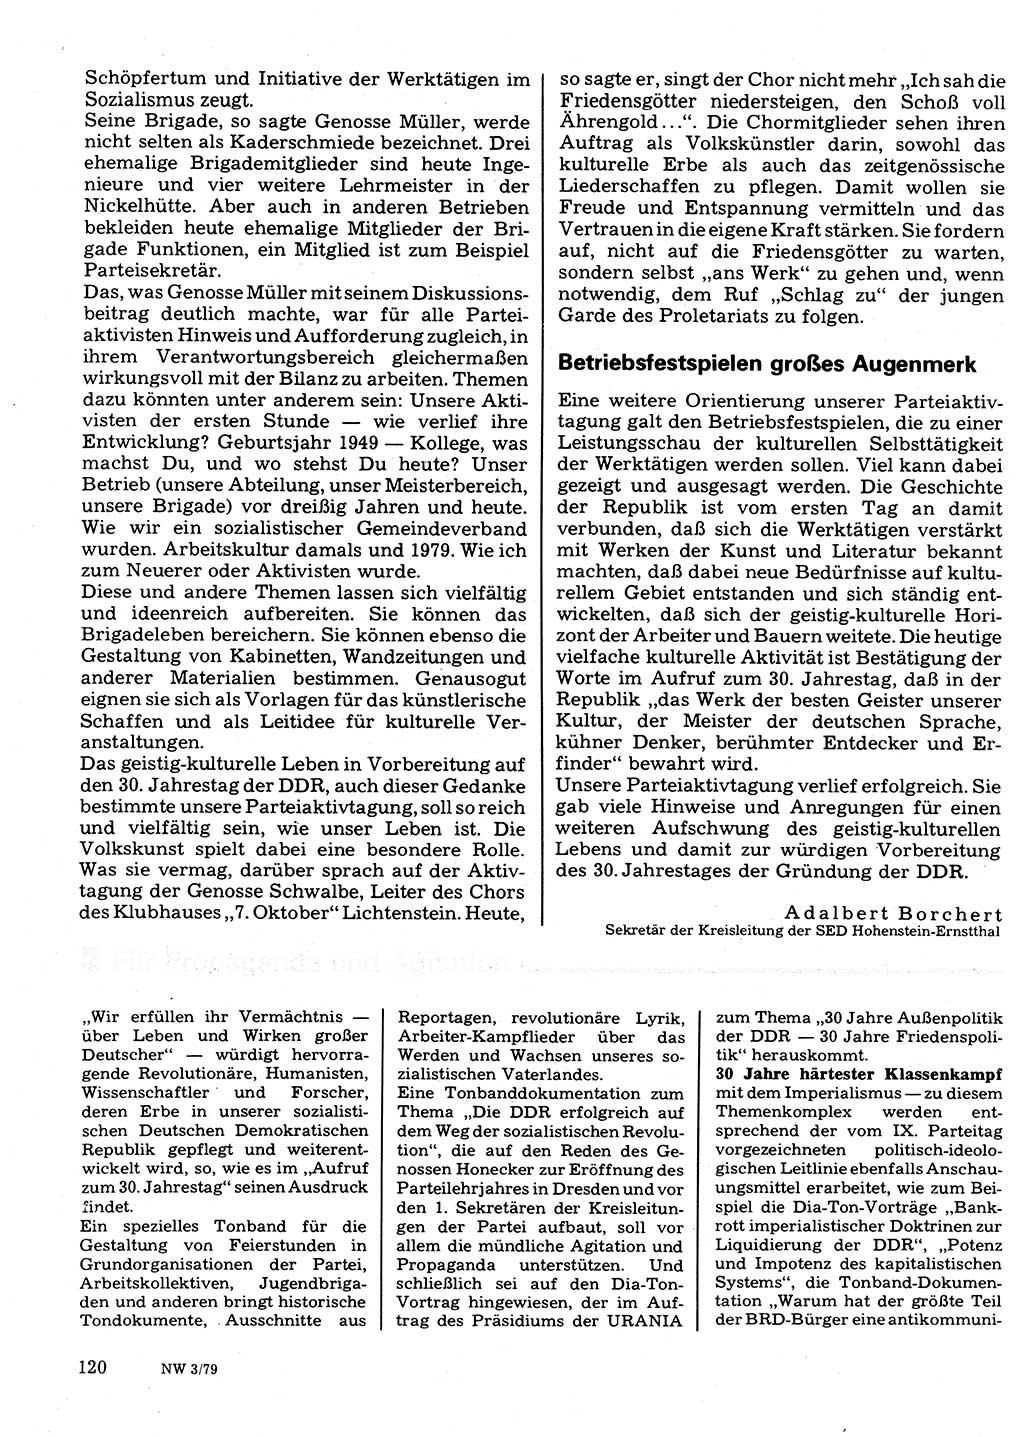 Neuer Weg (NW), Organ des Zentralkomitees (ZK) der SED (Sozialistische Einheitspartei Deutschlands) für Fragen des Parteilebens, 34. Jahrgang [Deutsche Demokratische Republik (DDR)] 1979, Seite 120 (NW ZK SED DDR 1979, S. 120)